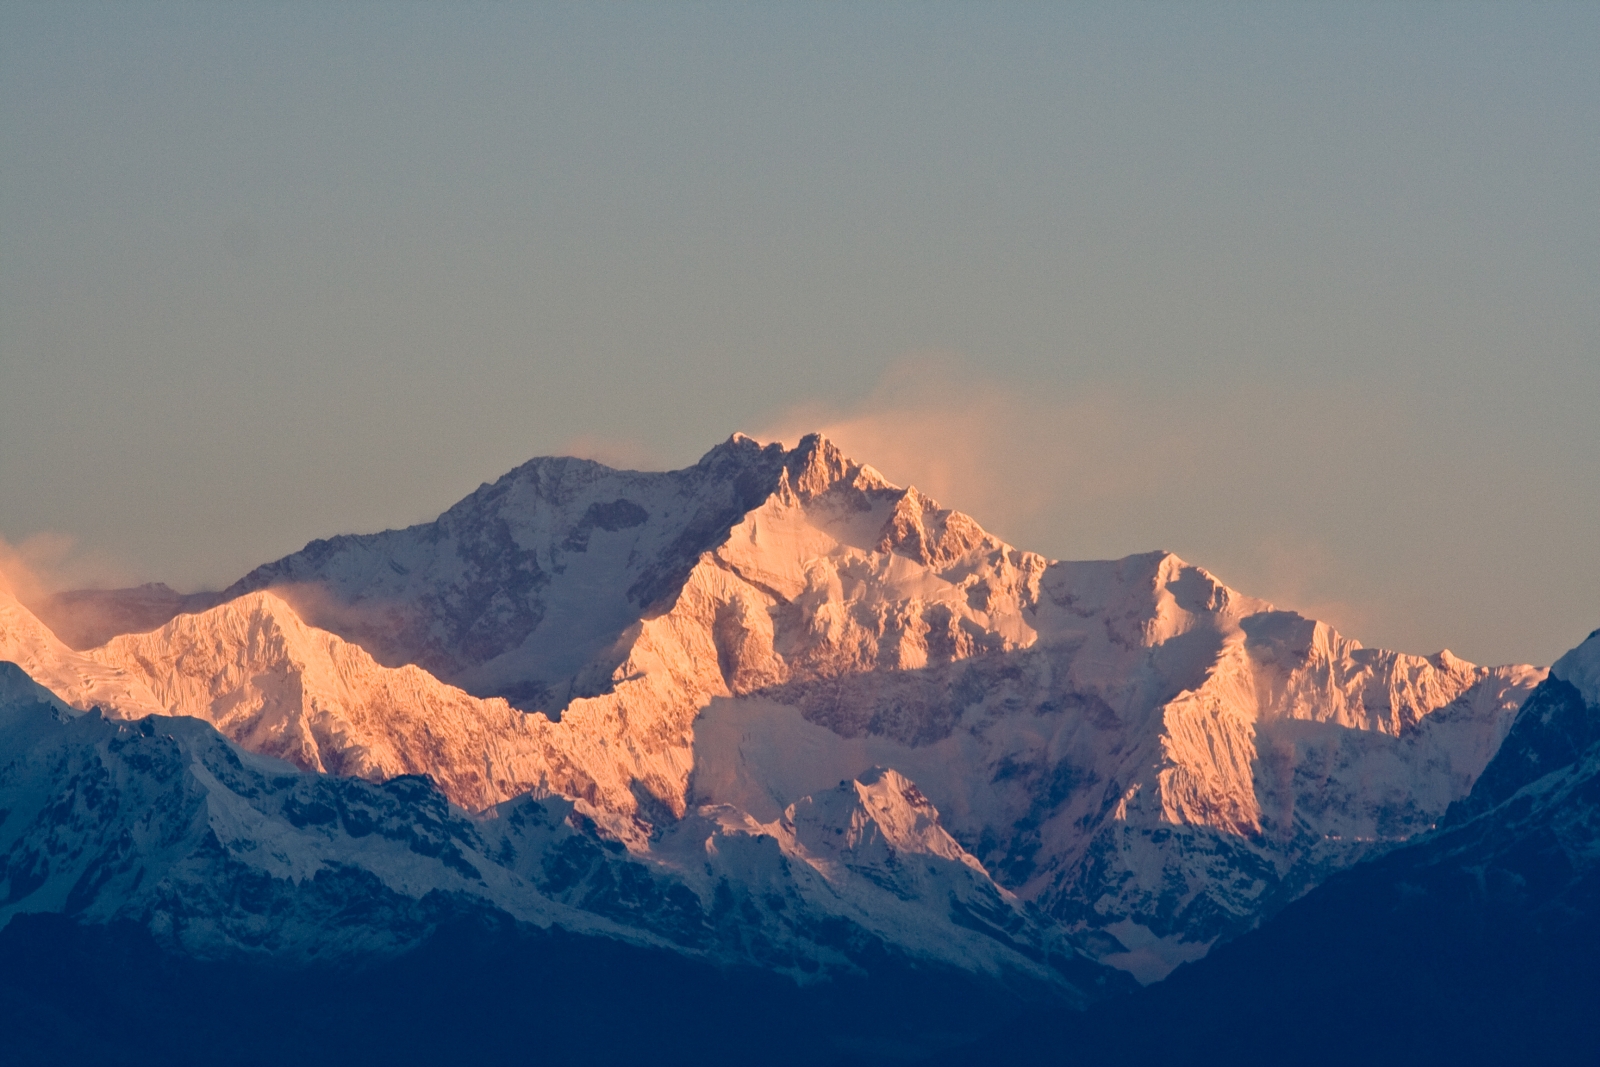  Канченджанга  (Kangchenjunga, 8586 м) - третья по высоте вершина мира